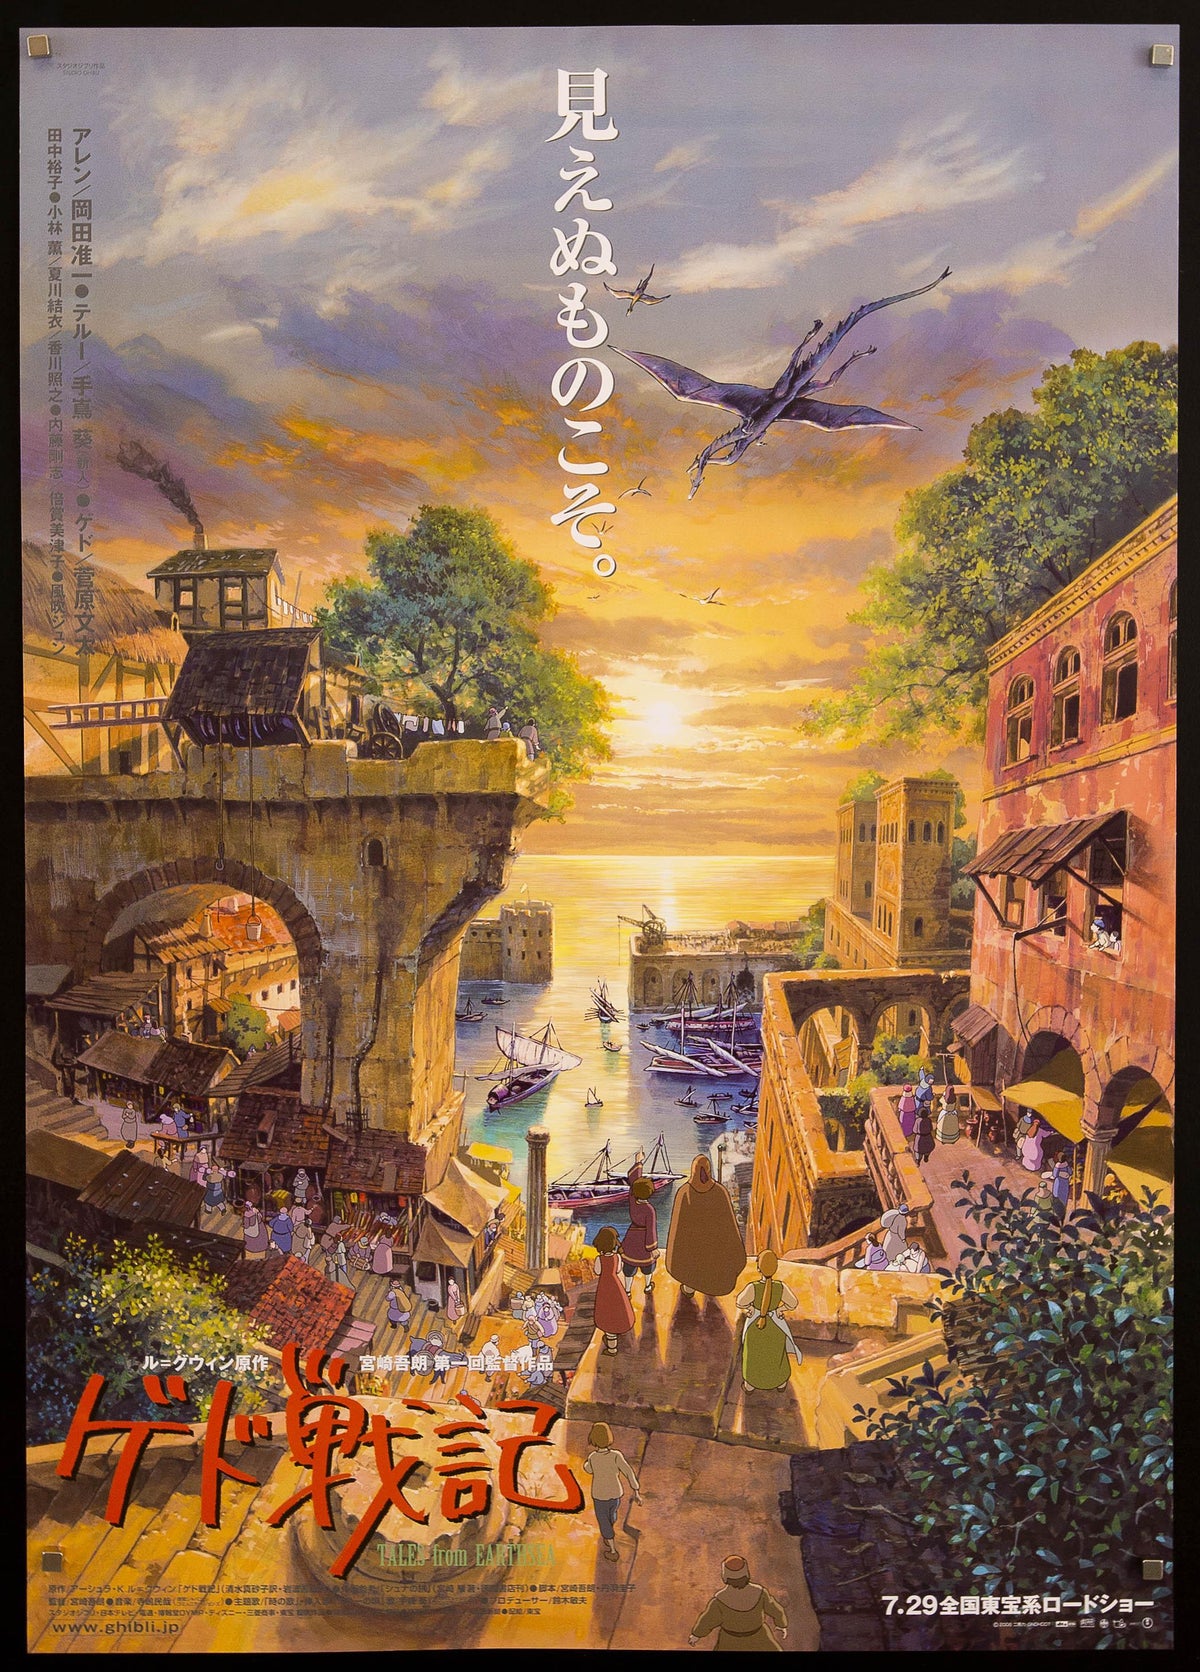 Tales From Earthsea Japanese B1 (28x40) Original Vintage Movie Poster